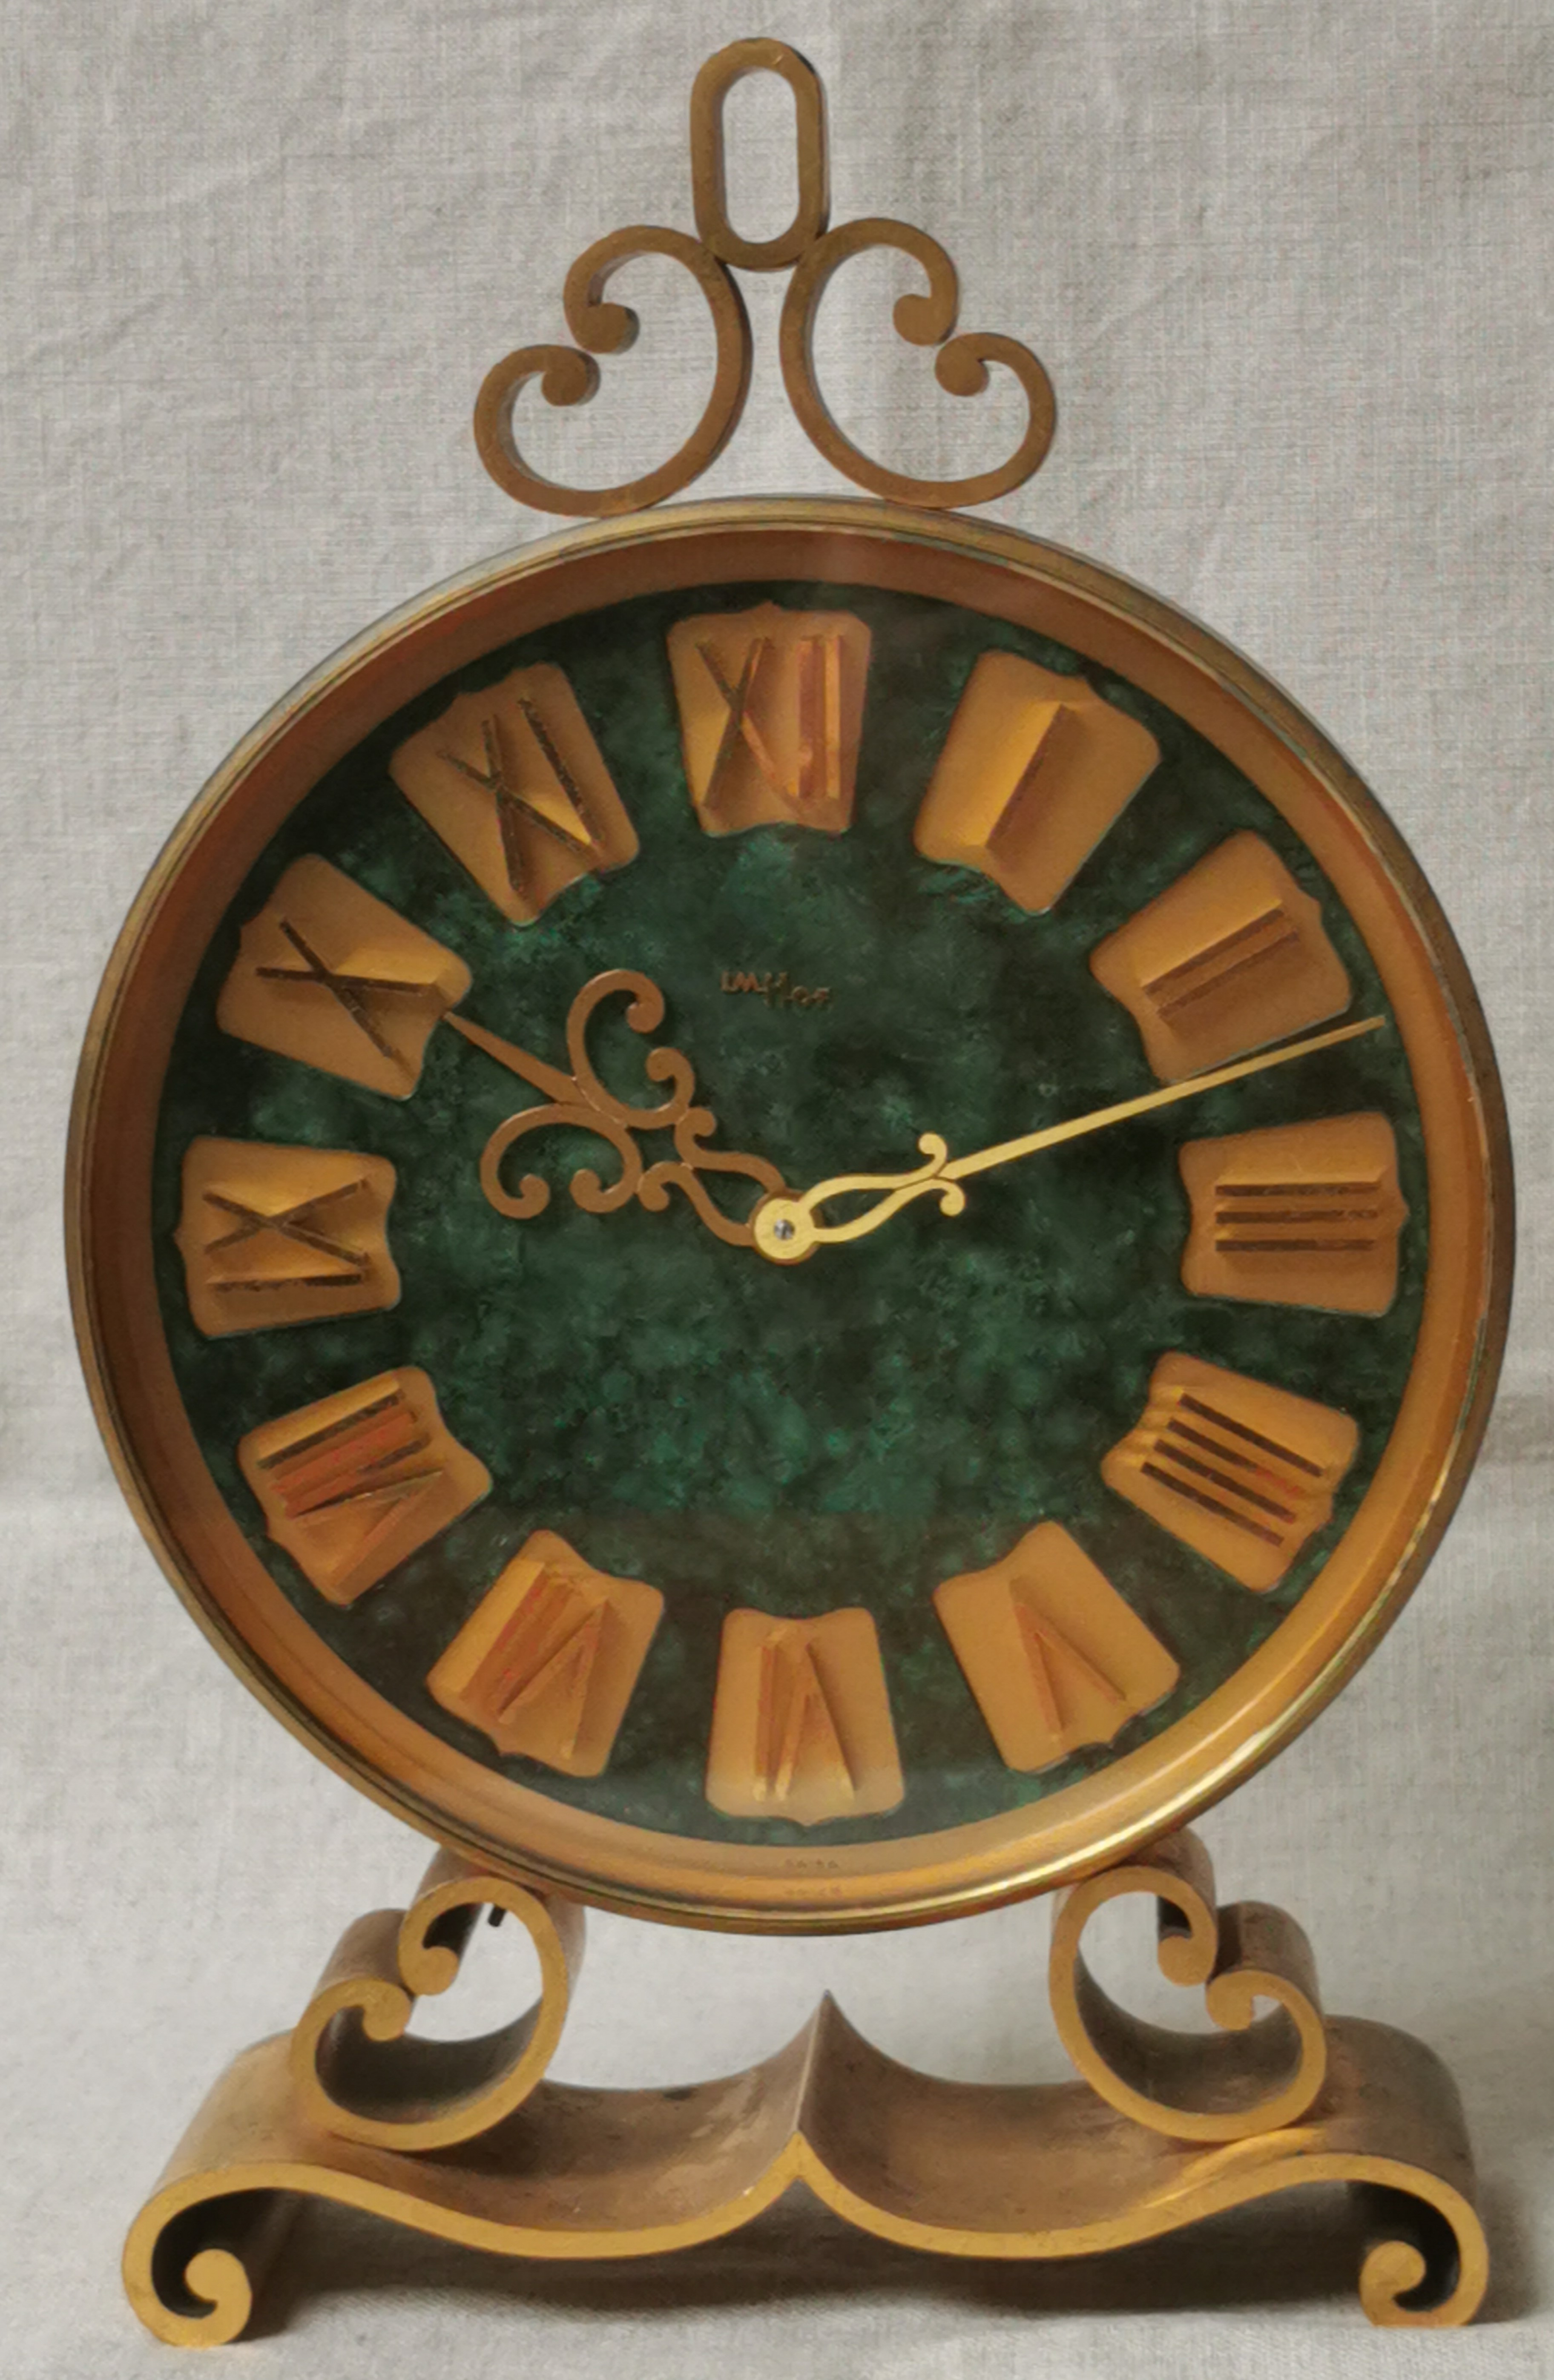 Anonimo Imhof Rare Large Table Clock - Gilt Brass - Malachite Maxi Dial - Just serviced - Good Condition | San Giorgio a Cremano